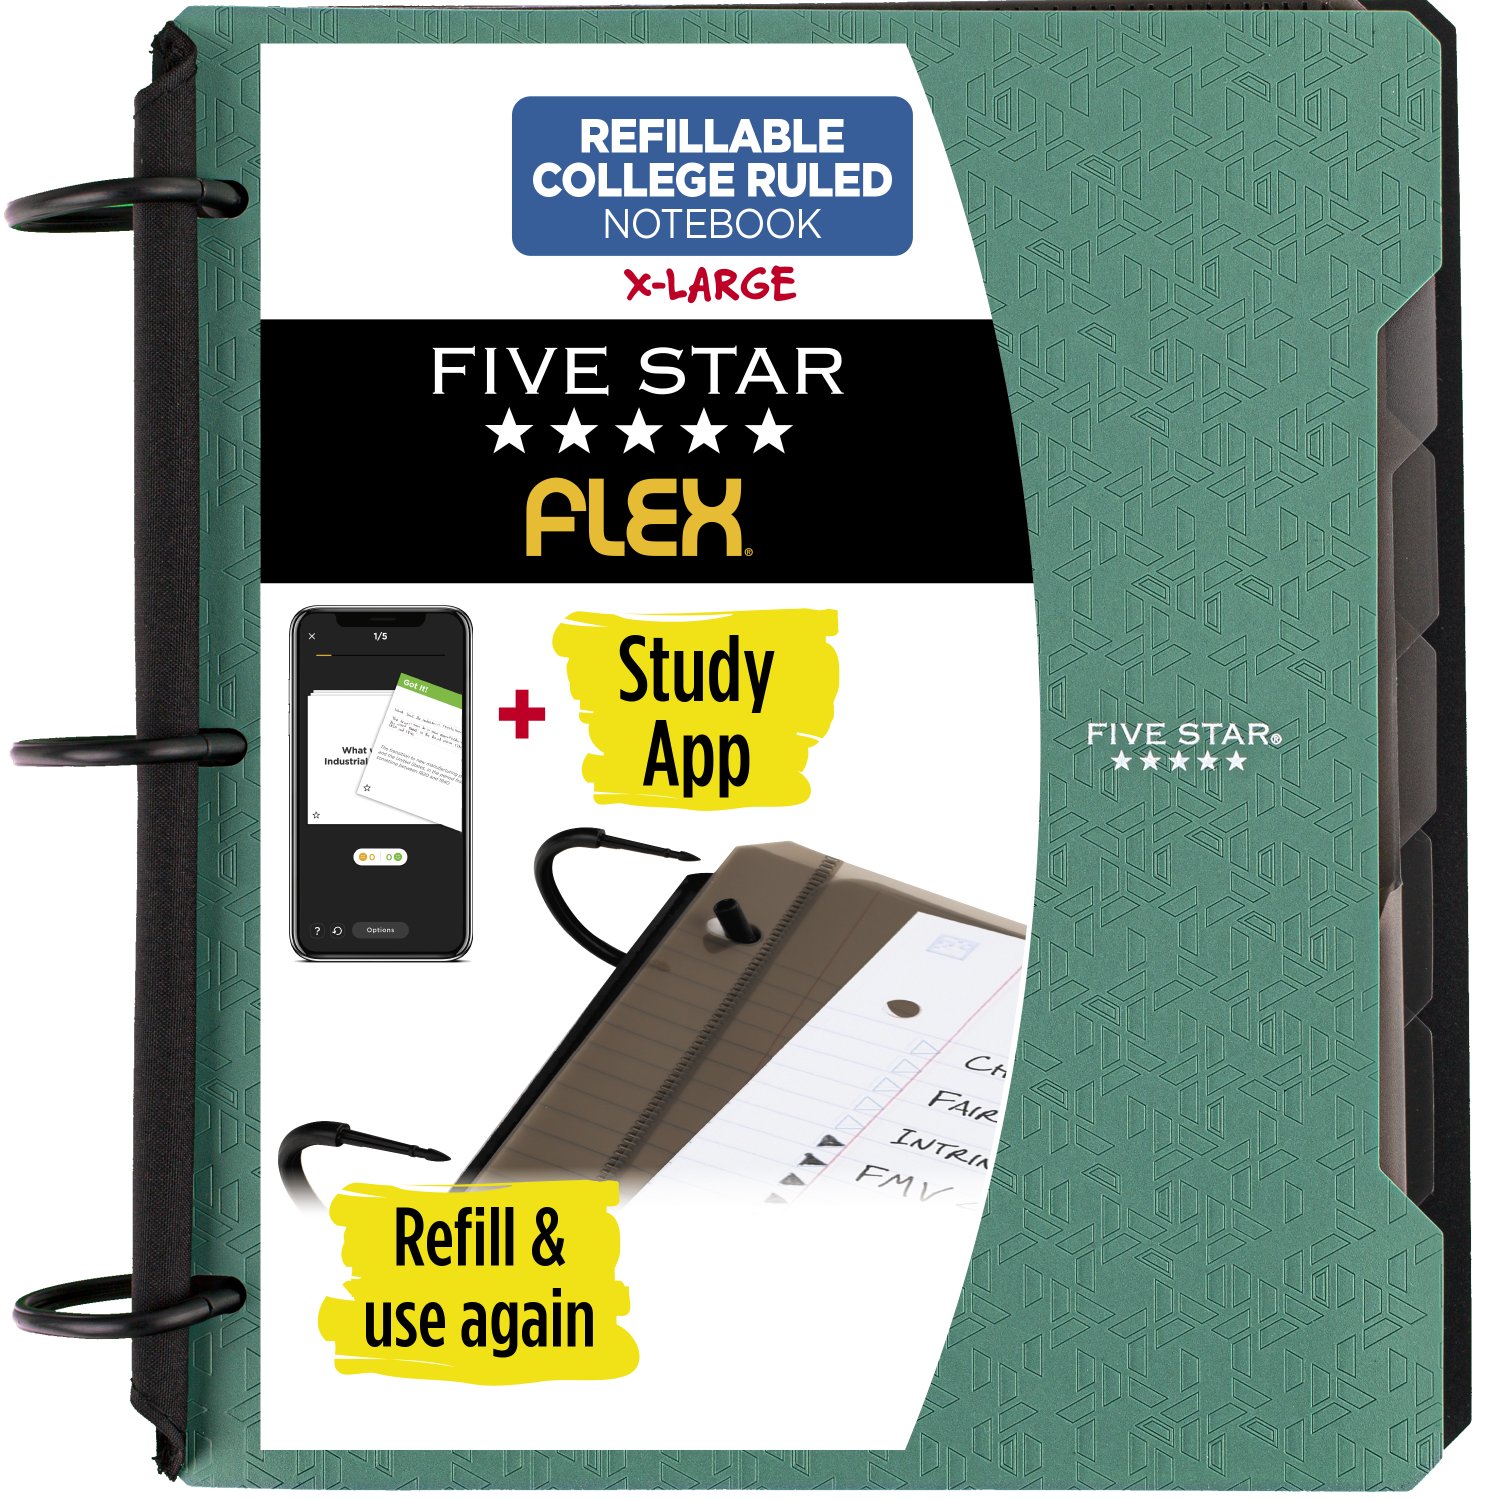 Five Star Flex 1 1/2" Hybrid NoteBinder, Color Chosen For You